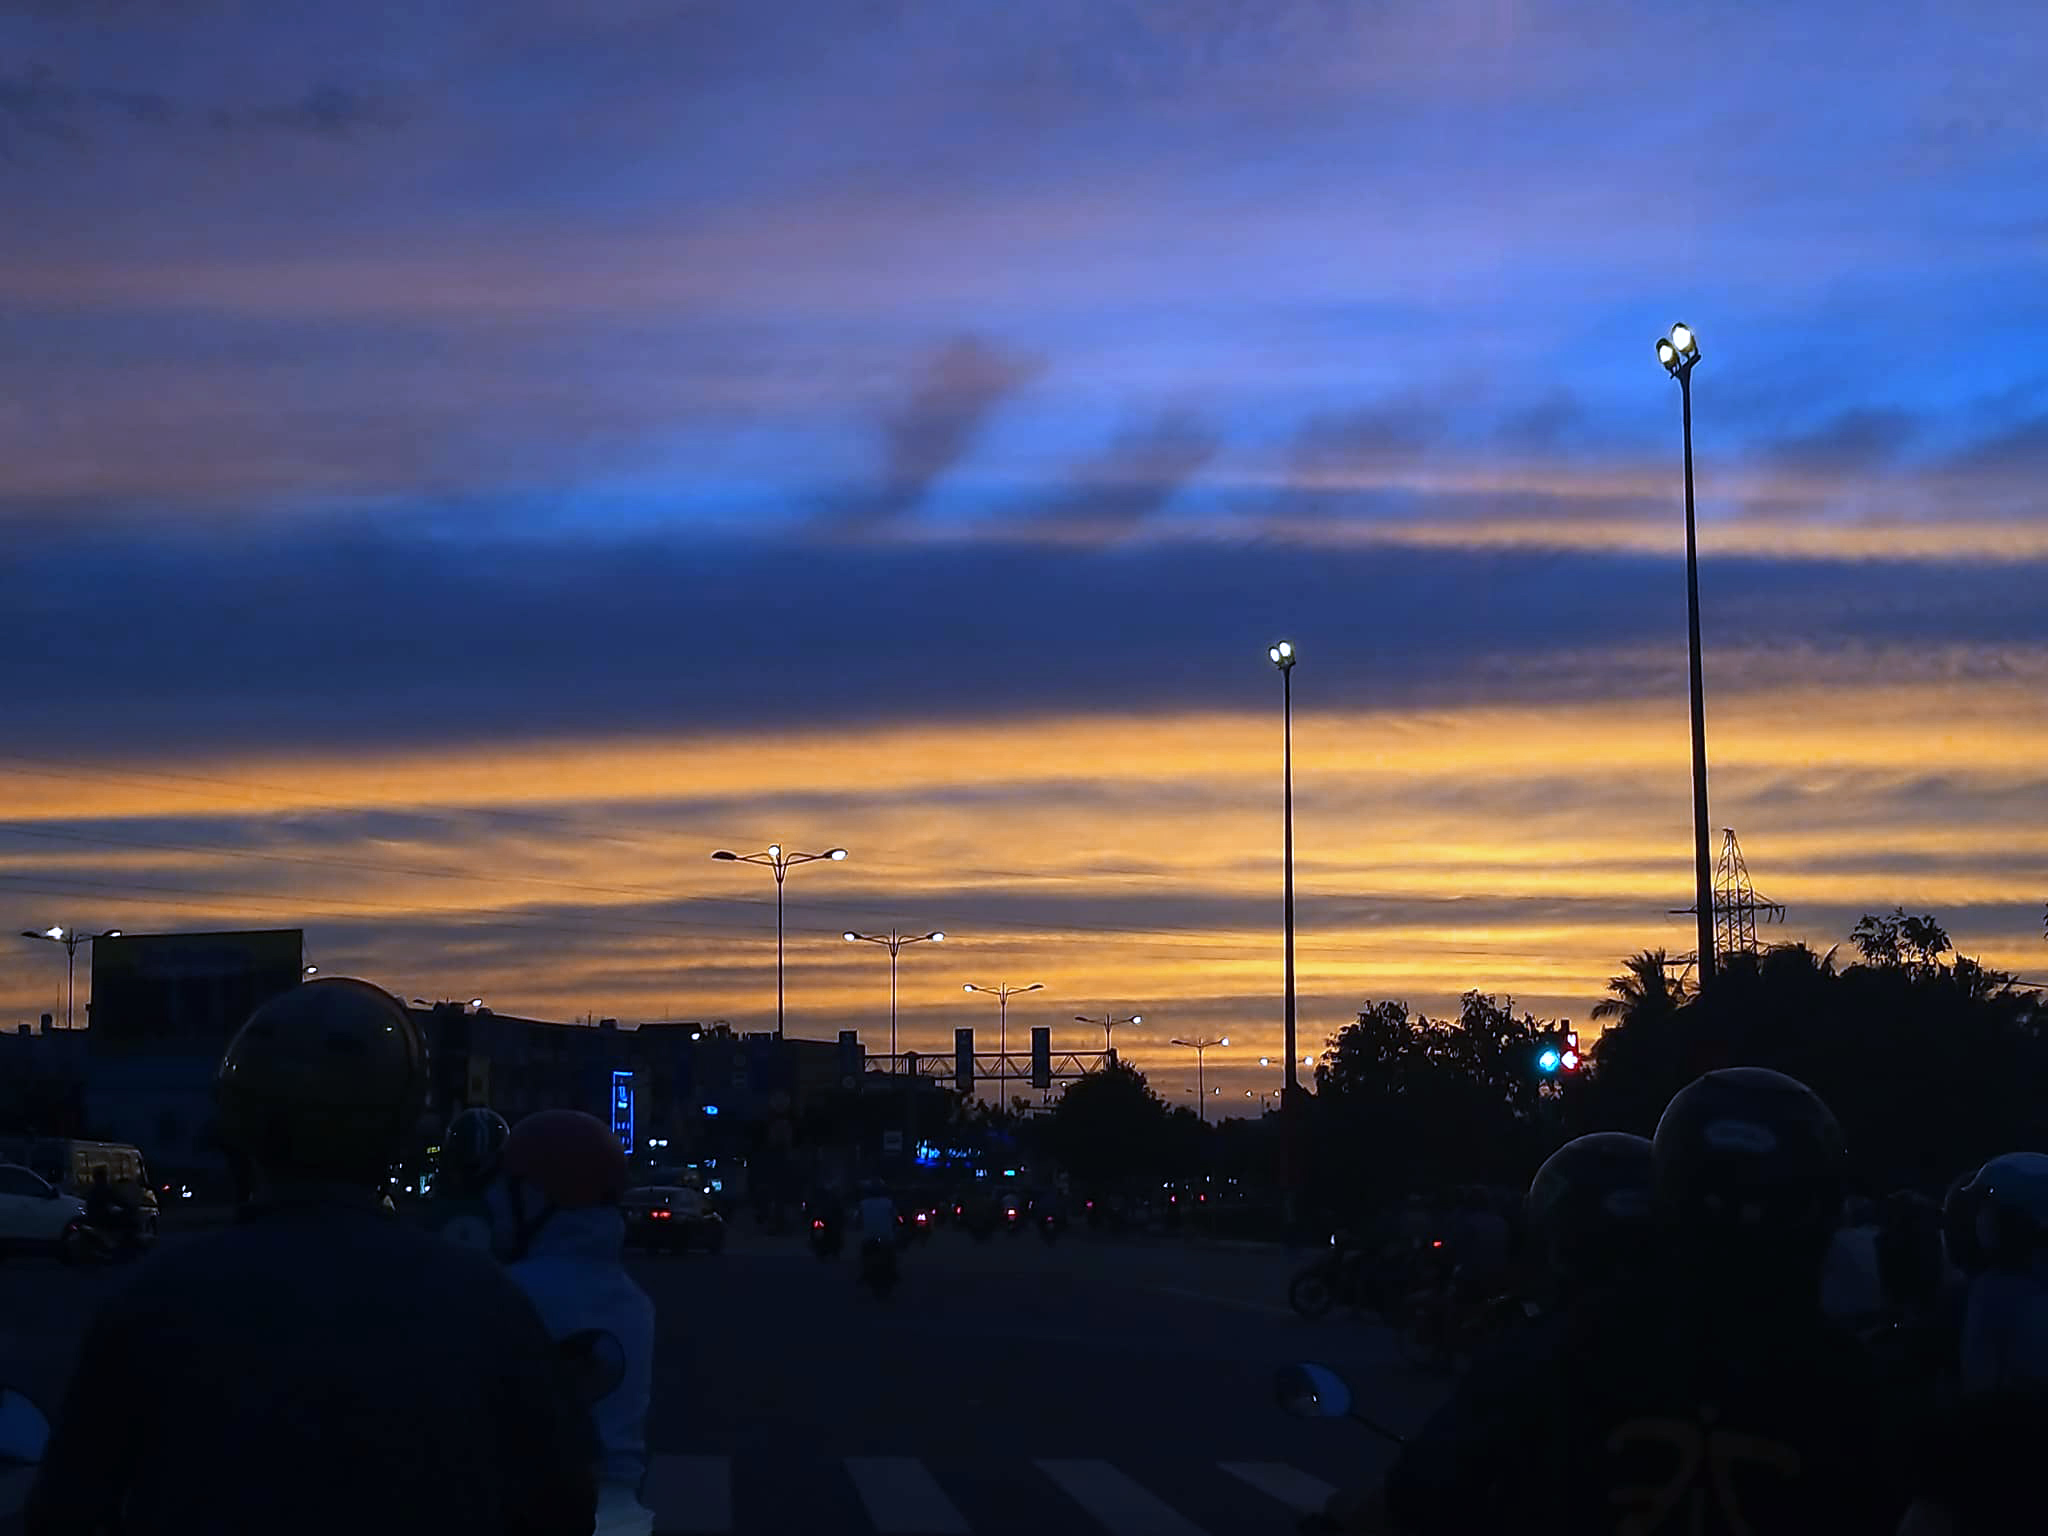 Bảng màu bầu trời Sài Gòn đầy màu sắc và cảm xúc. Từ ánh sáng đến màu đỏ chói lấp lánh của hoàng hôn, hay ánh đèn đường trong đêm thì nghệ thuật bầu trời Sài Gòn sẽ khiến bạn thật sự bất ngờ. Hãy xem ngay những hình ảnh tuyệt vời này, và đắm chìm vào những từng khoảnh khắc đẹp nhất.